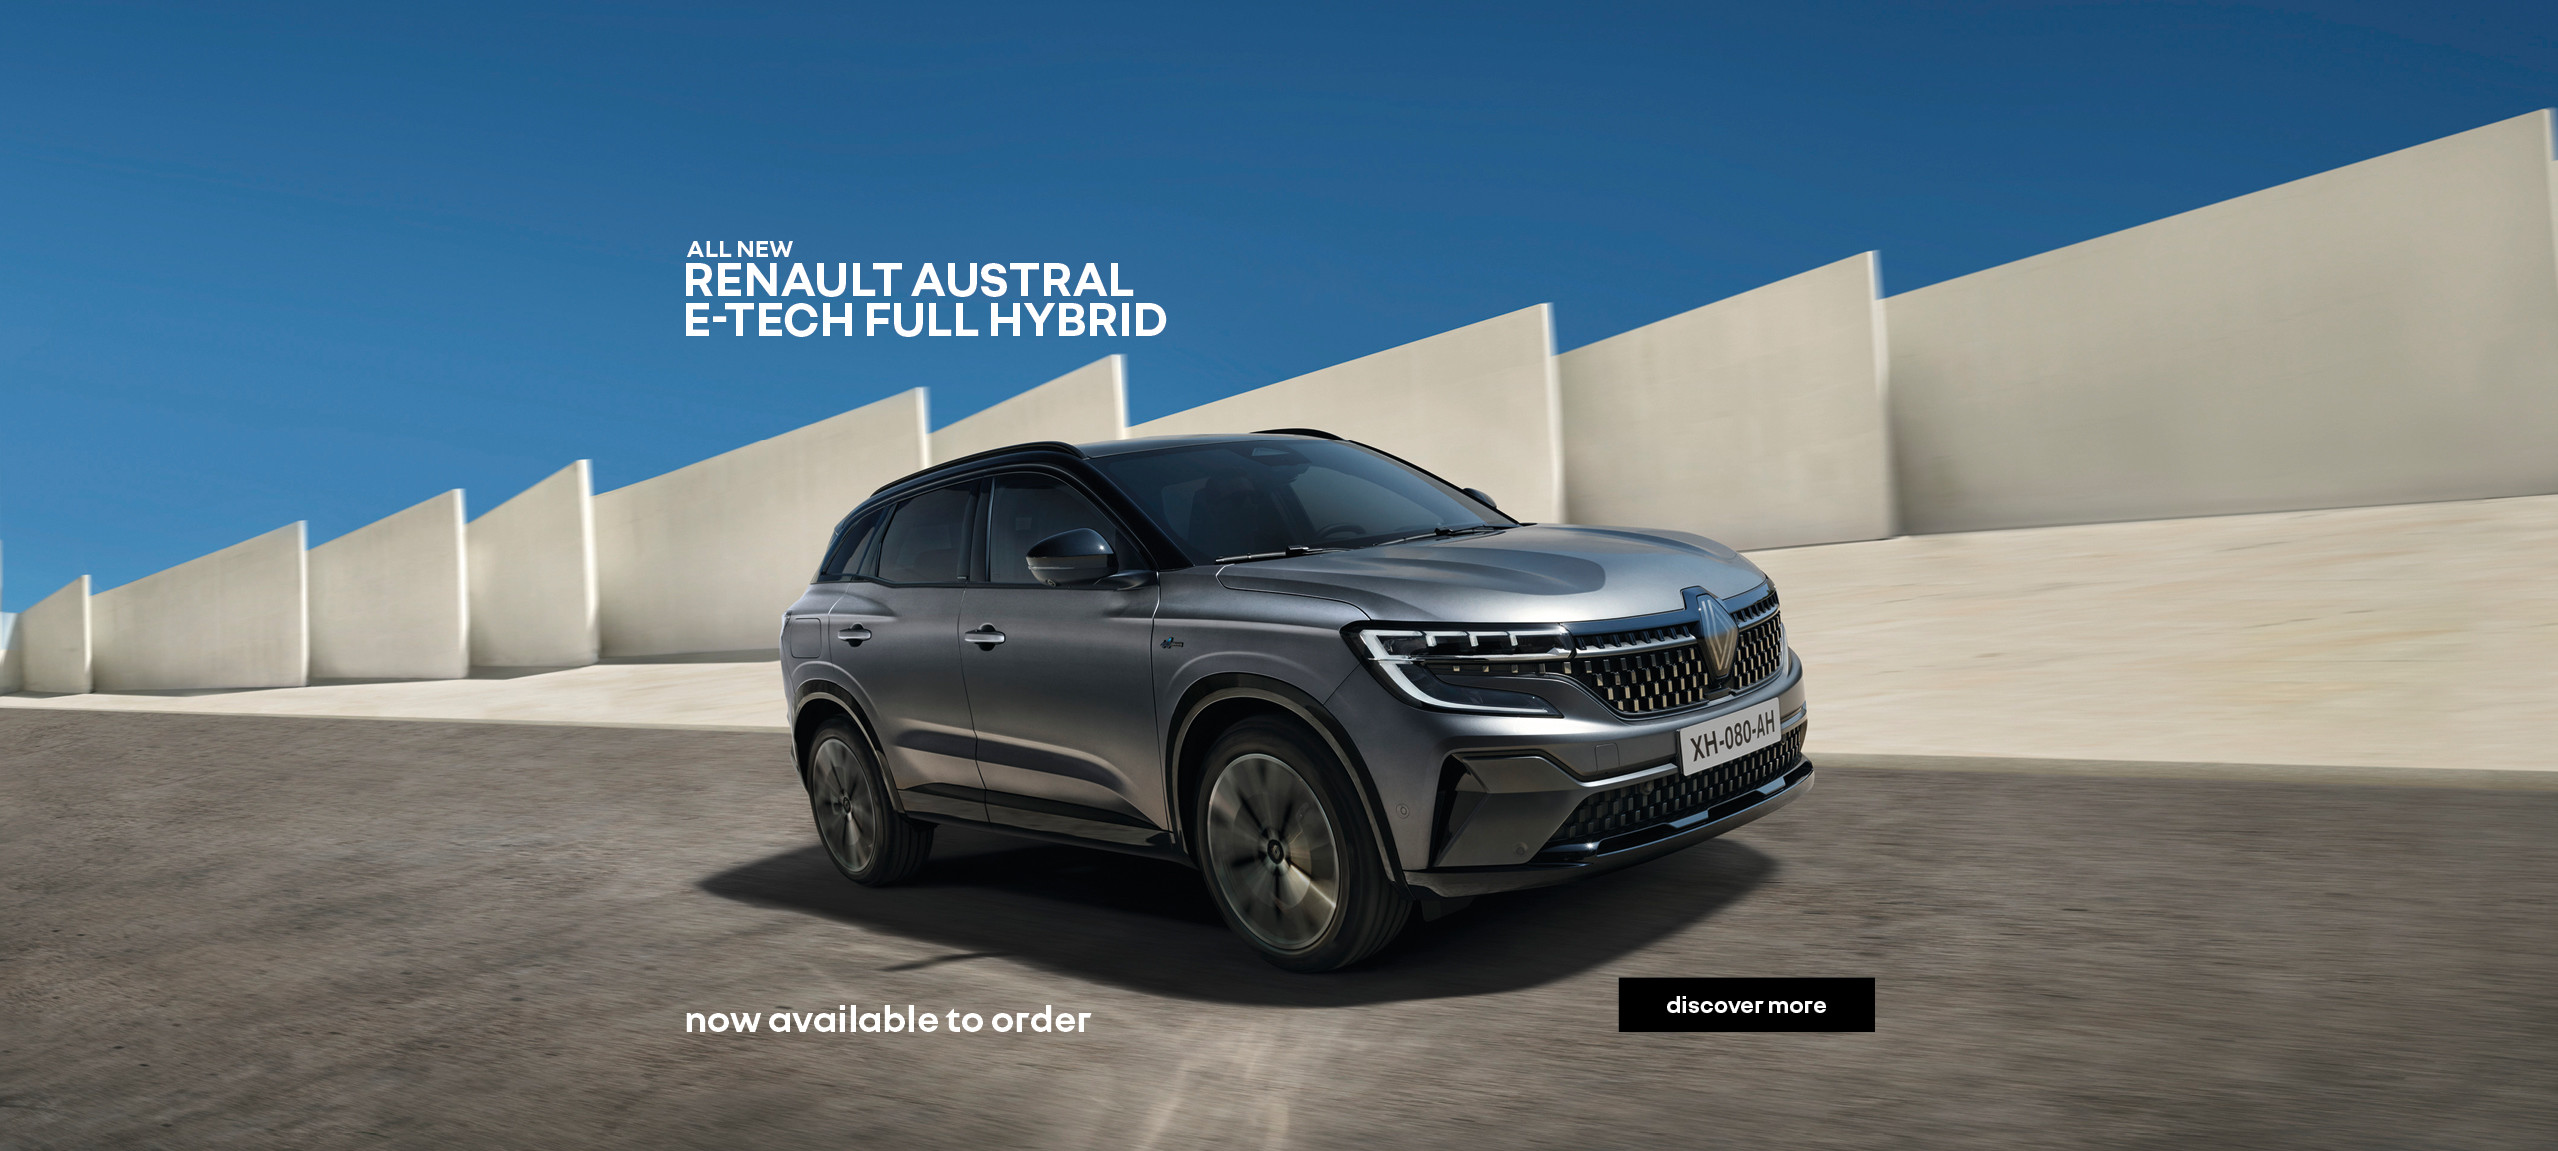 all new Renault Austral E-Tech Full Hybrid